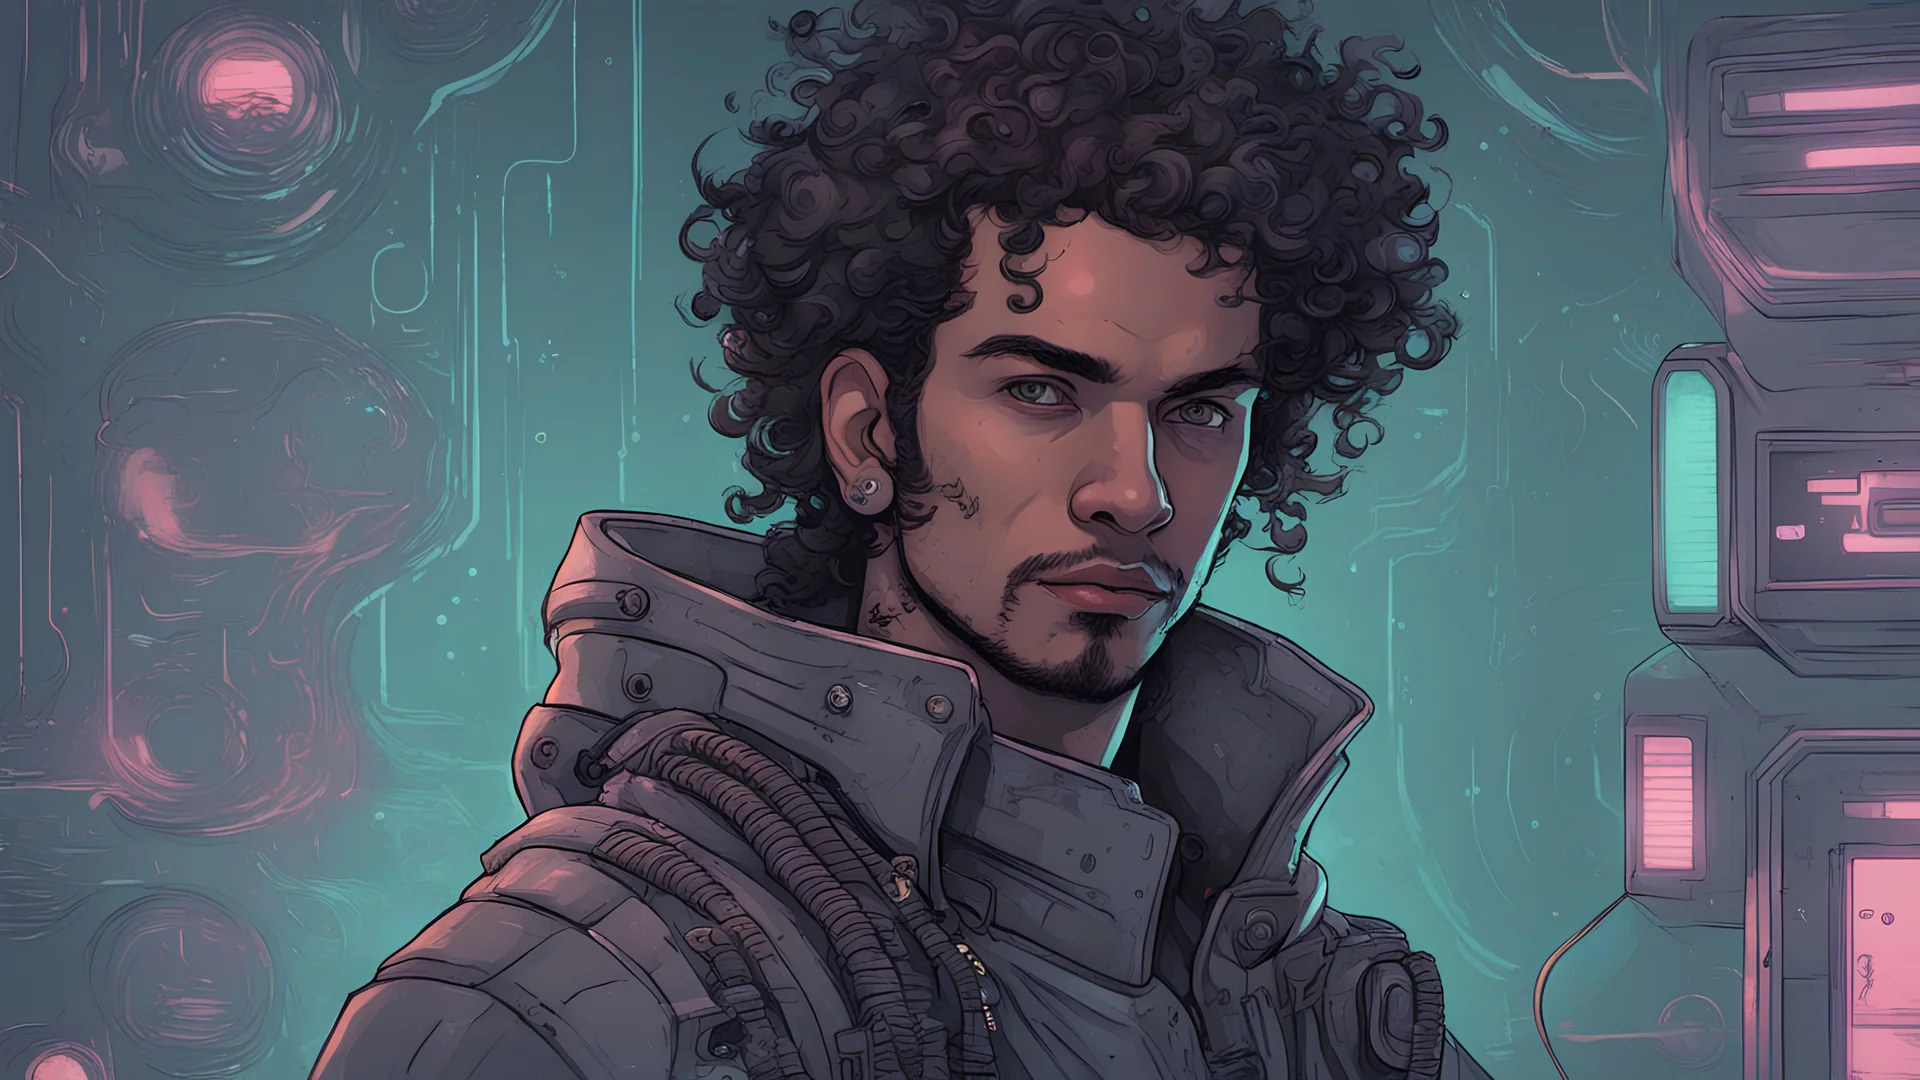 Personnage de science-fiction homme de haute qualité Portrait d'un pirate de l'espace aux cheveux bouclés. Illustré dans le style de cyberpunk